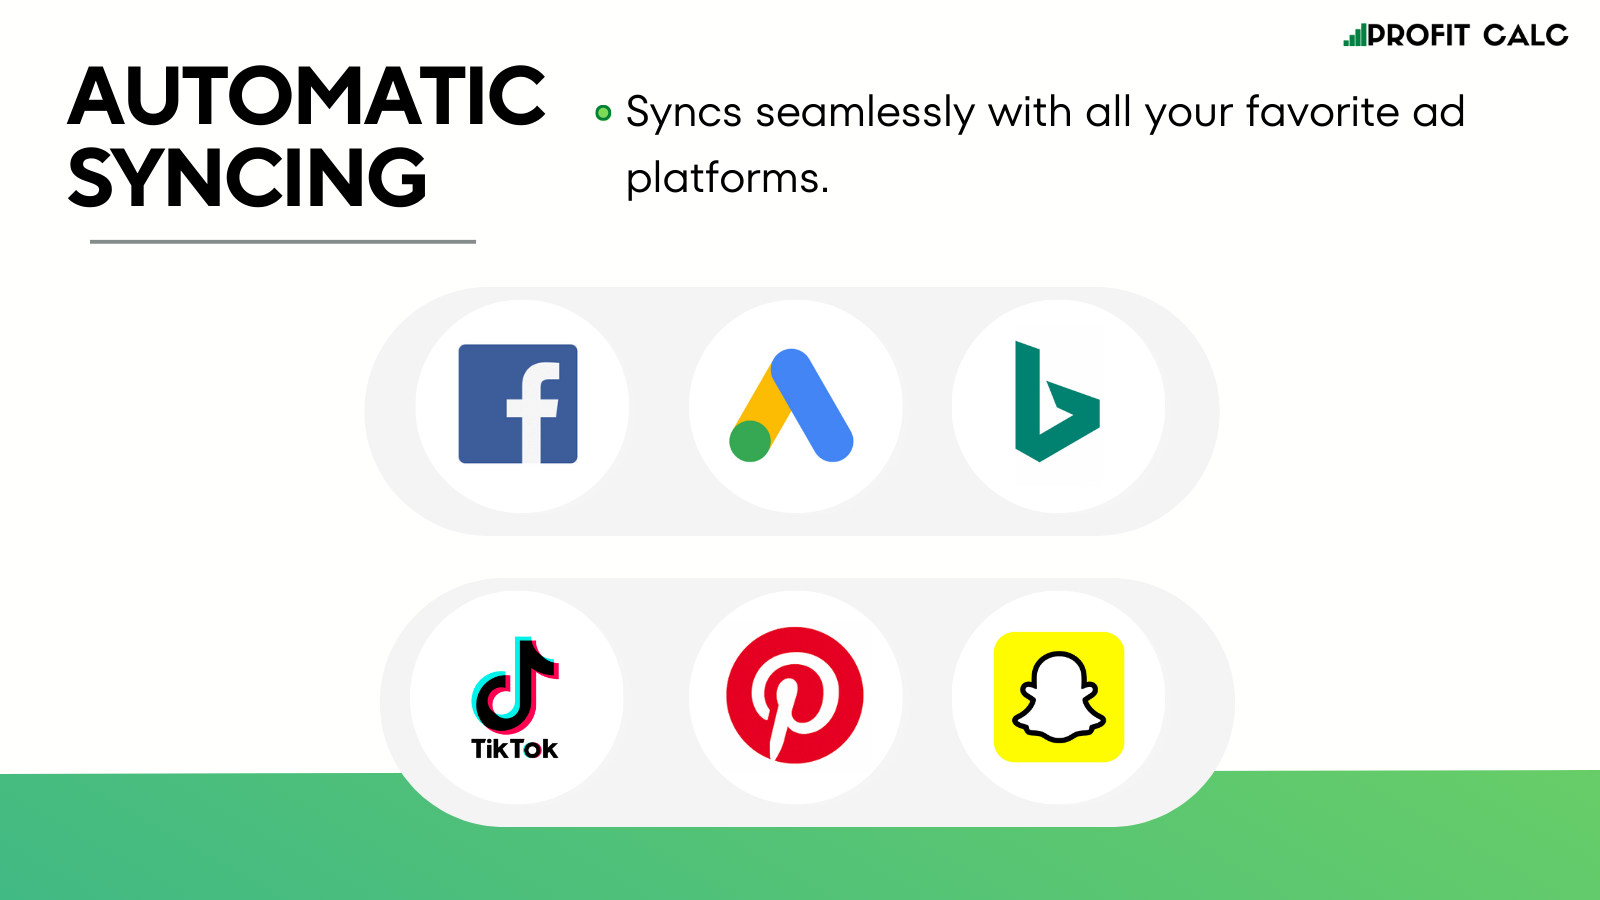 Sincronización con Facebook, Google, Bing, Tik Tok, Snapchat, & Pinterest